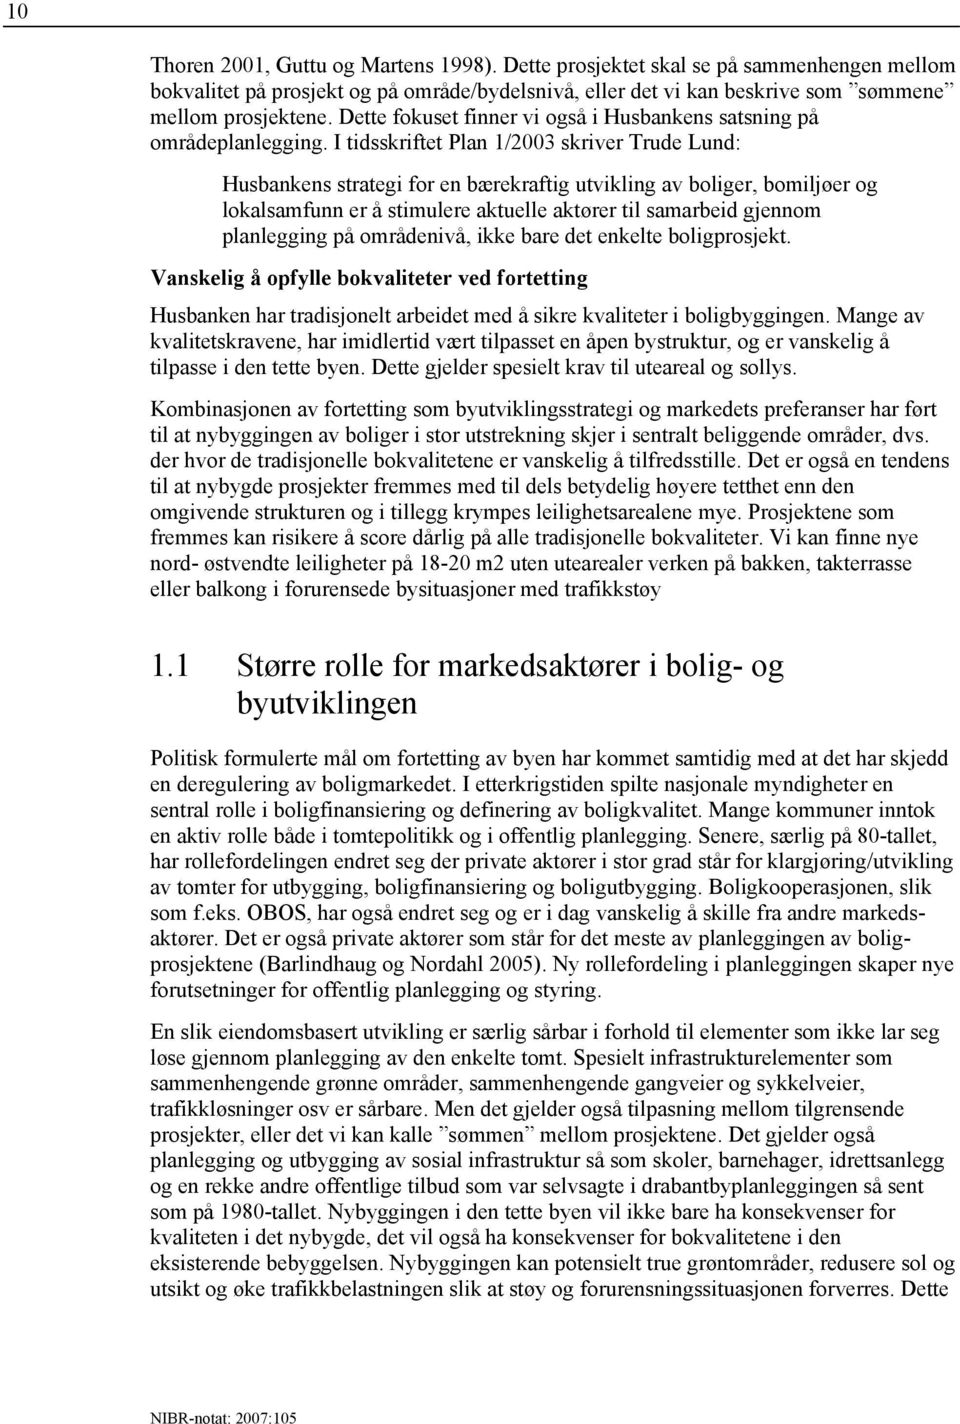 I tidsskriftet Plan 1/2003 skriver Trude Lund: Husbankens strategi for en bærekraftig utvikling av boliger, bomiljøer og lokalsamfunn er å stimulere aktuelle aktører til samarbeid gjennom planlegging